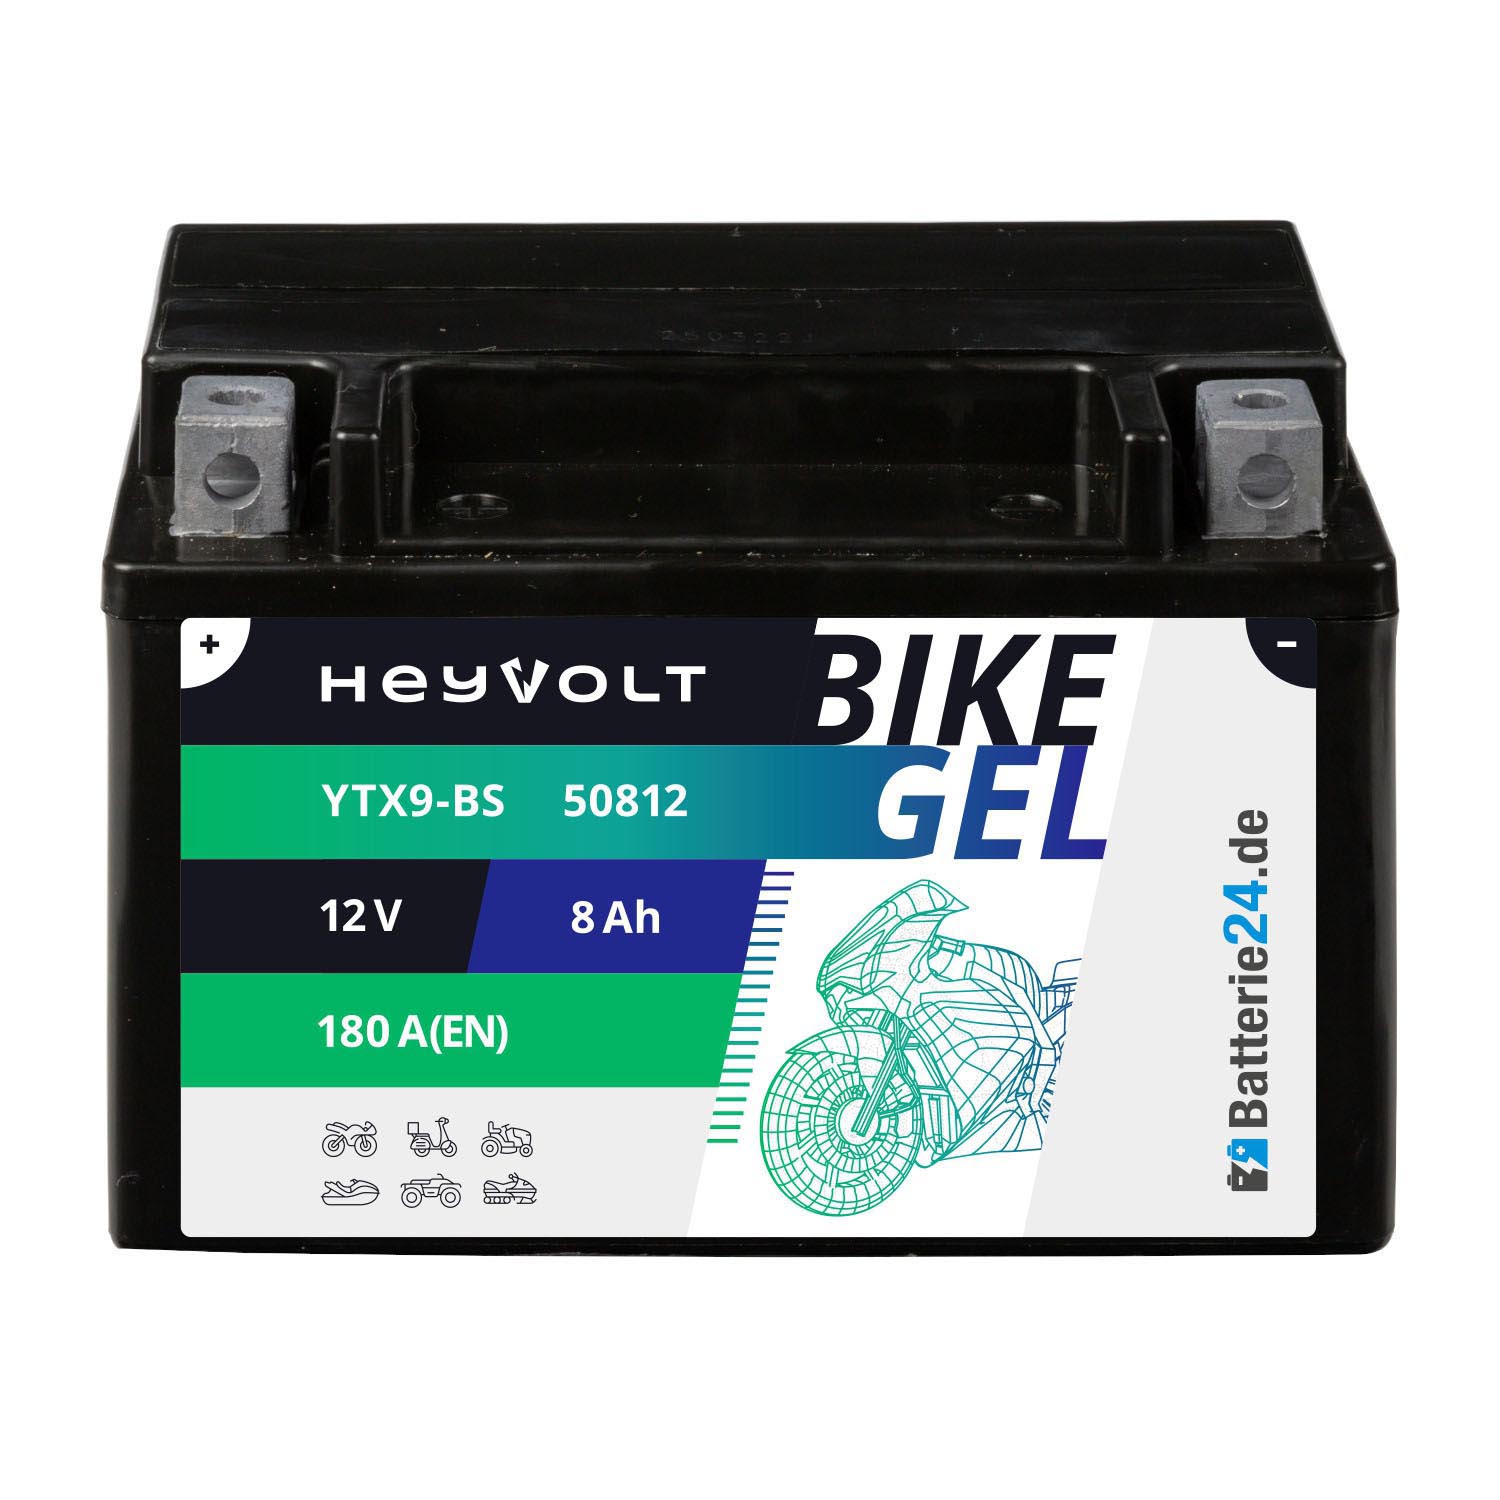 HeyVolt BIKE GEL Motorradbatterie YTX9-BS 50812 12V 8Ah